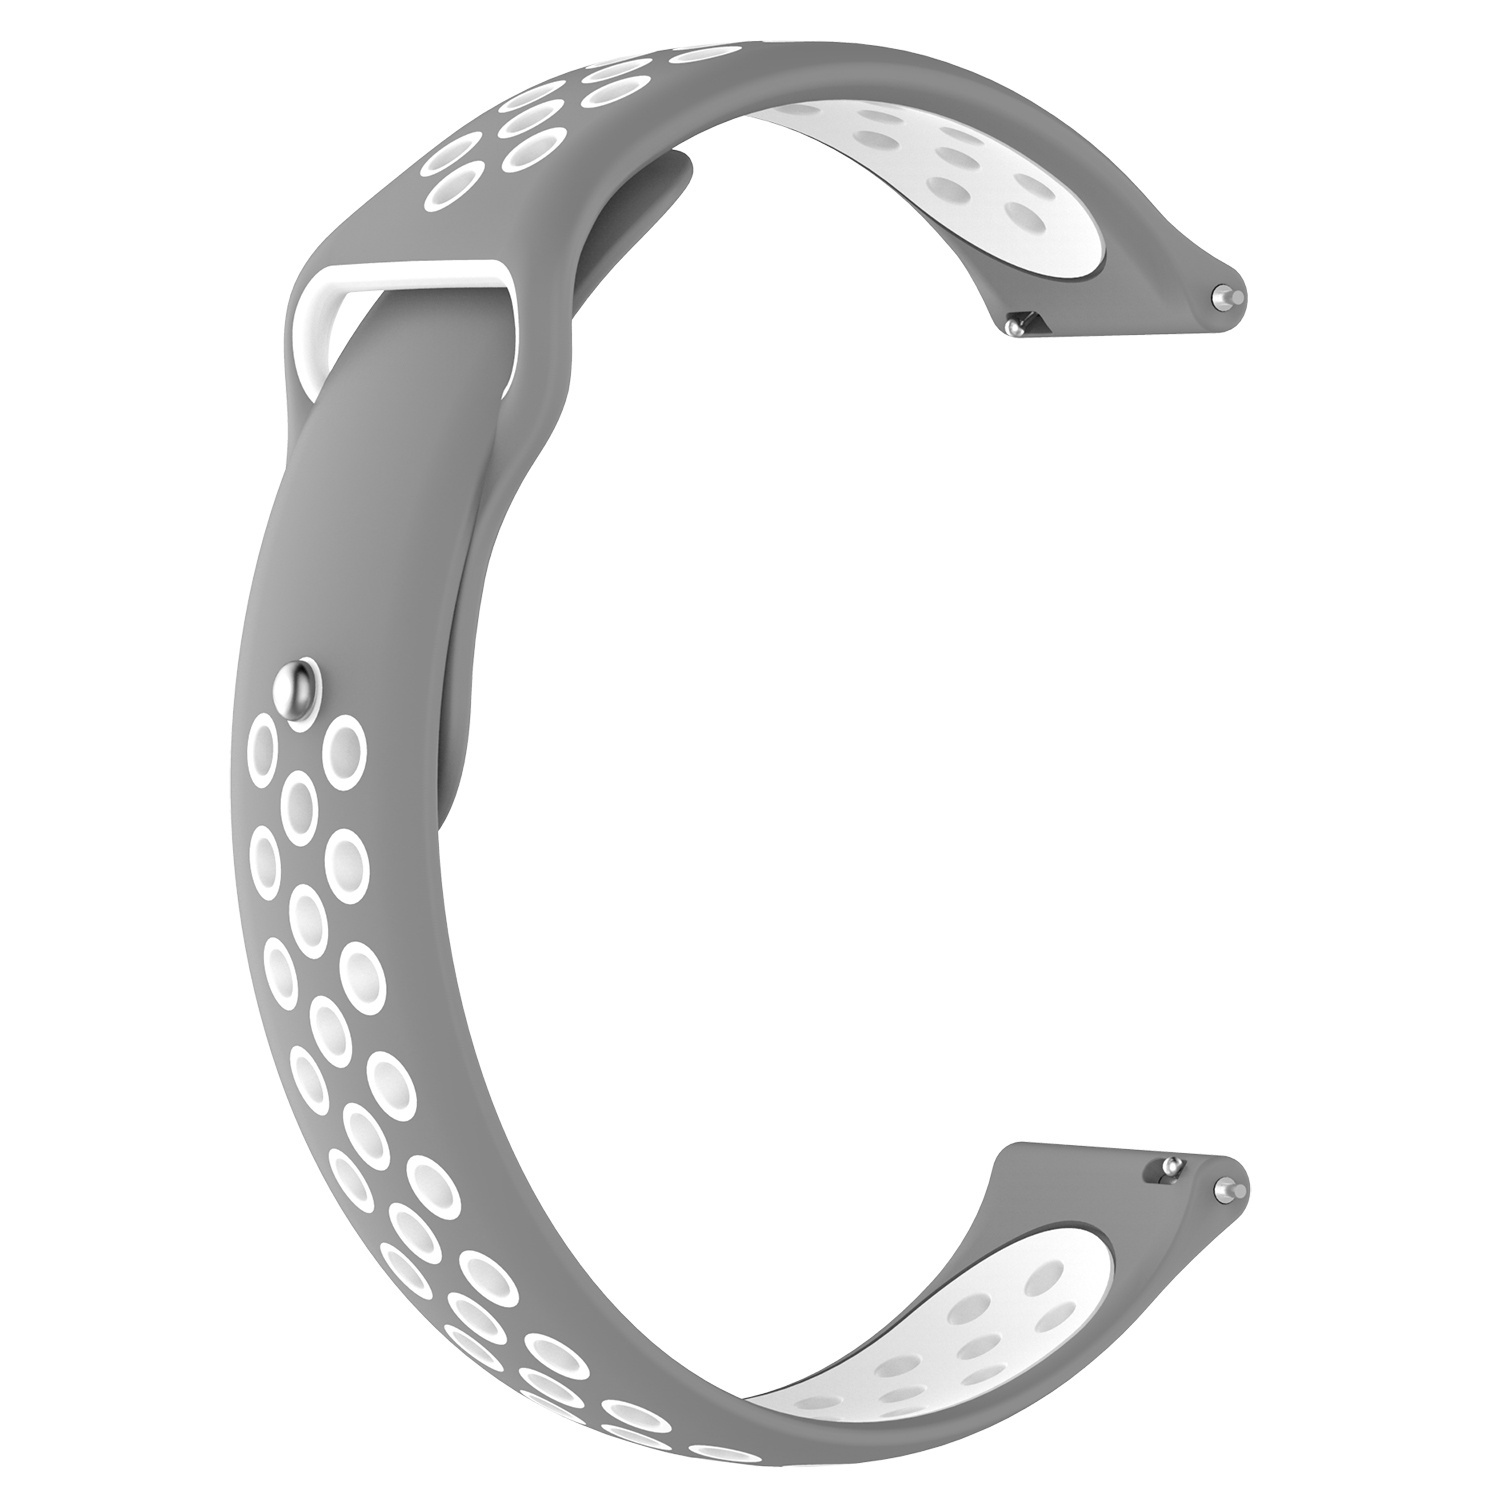 Samsung Galaxy Watch Doppel Sportarmband - grau-weiß